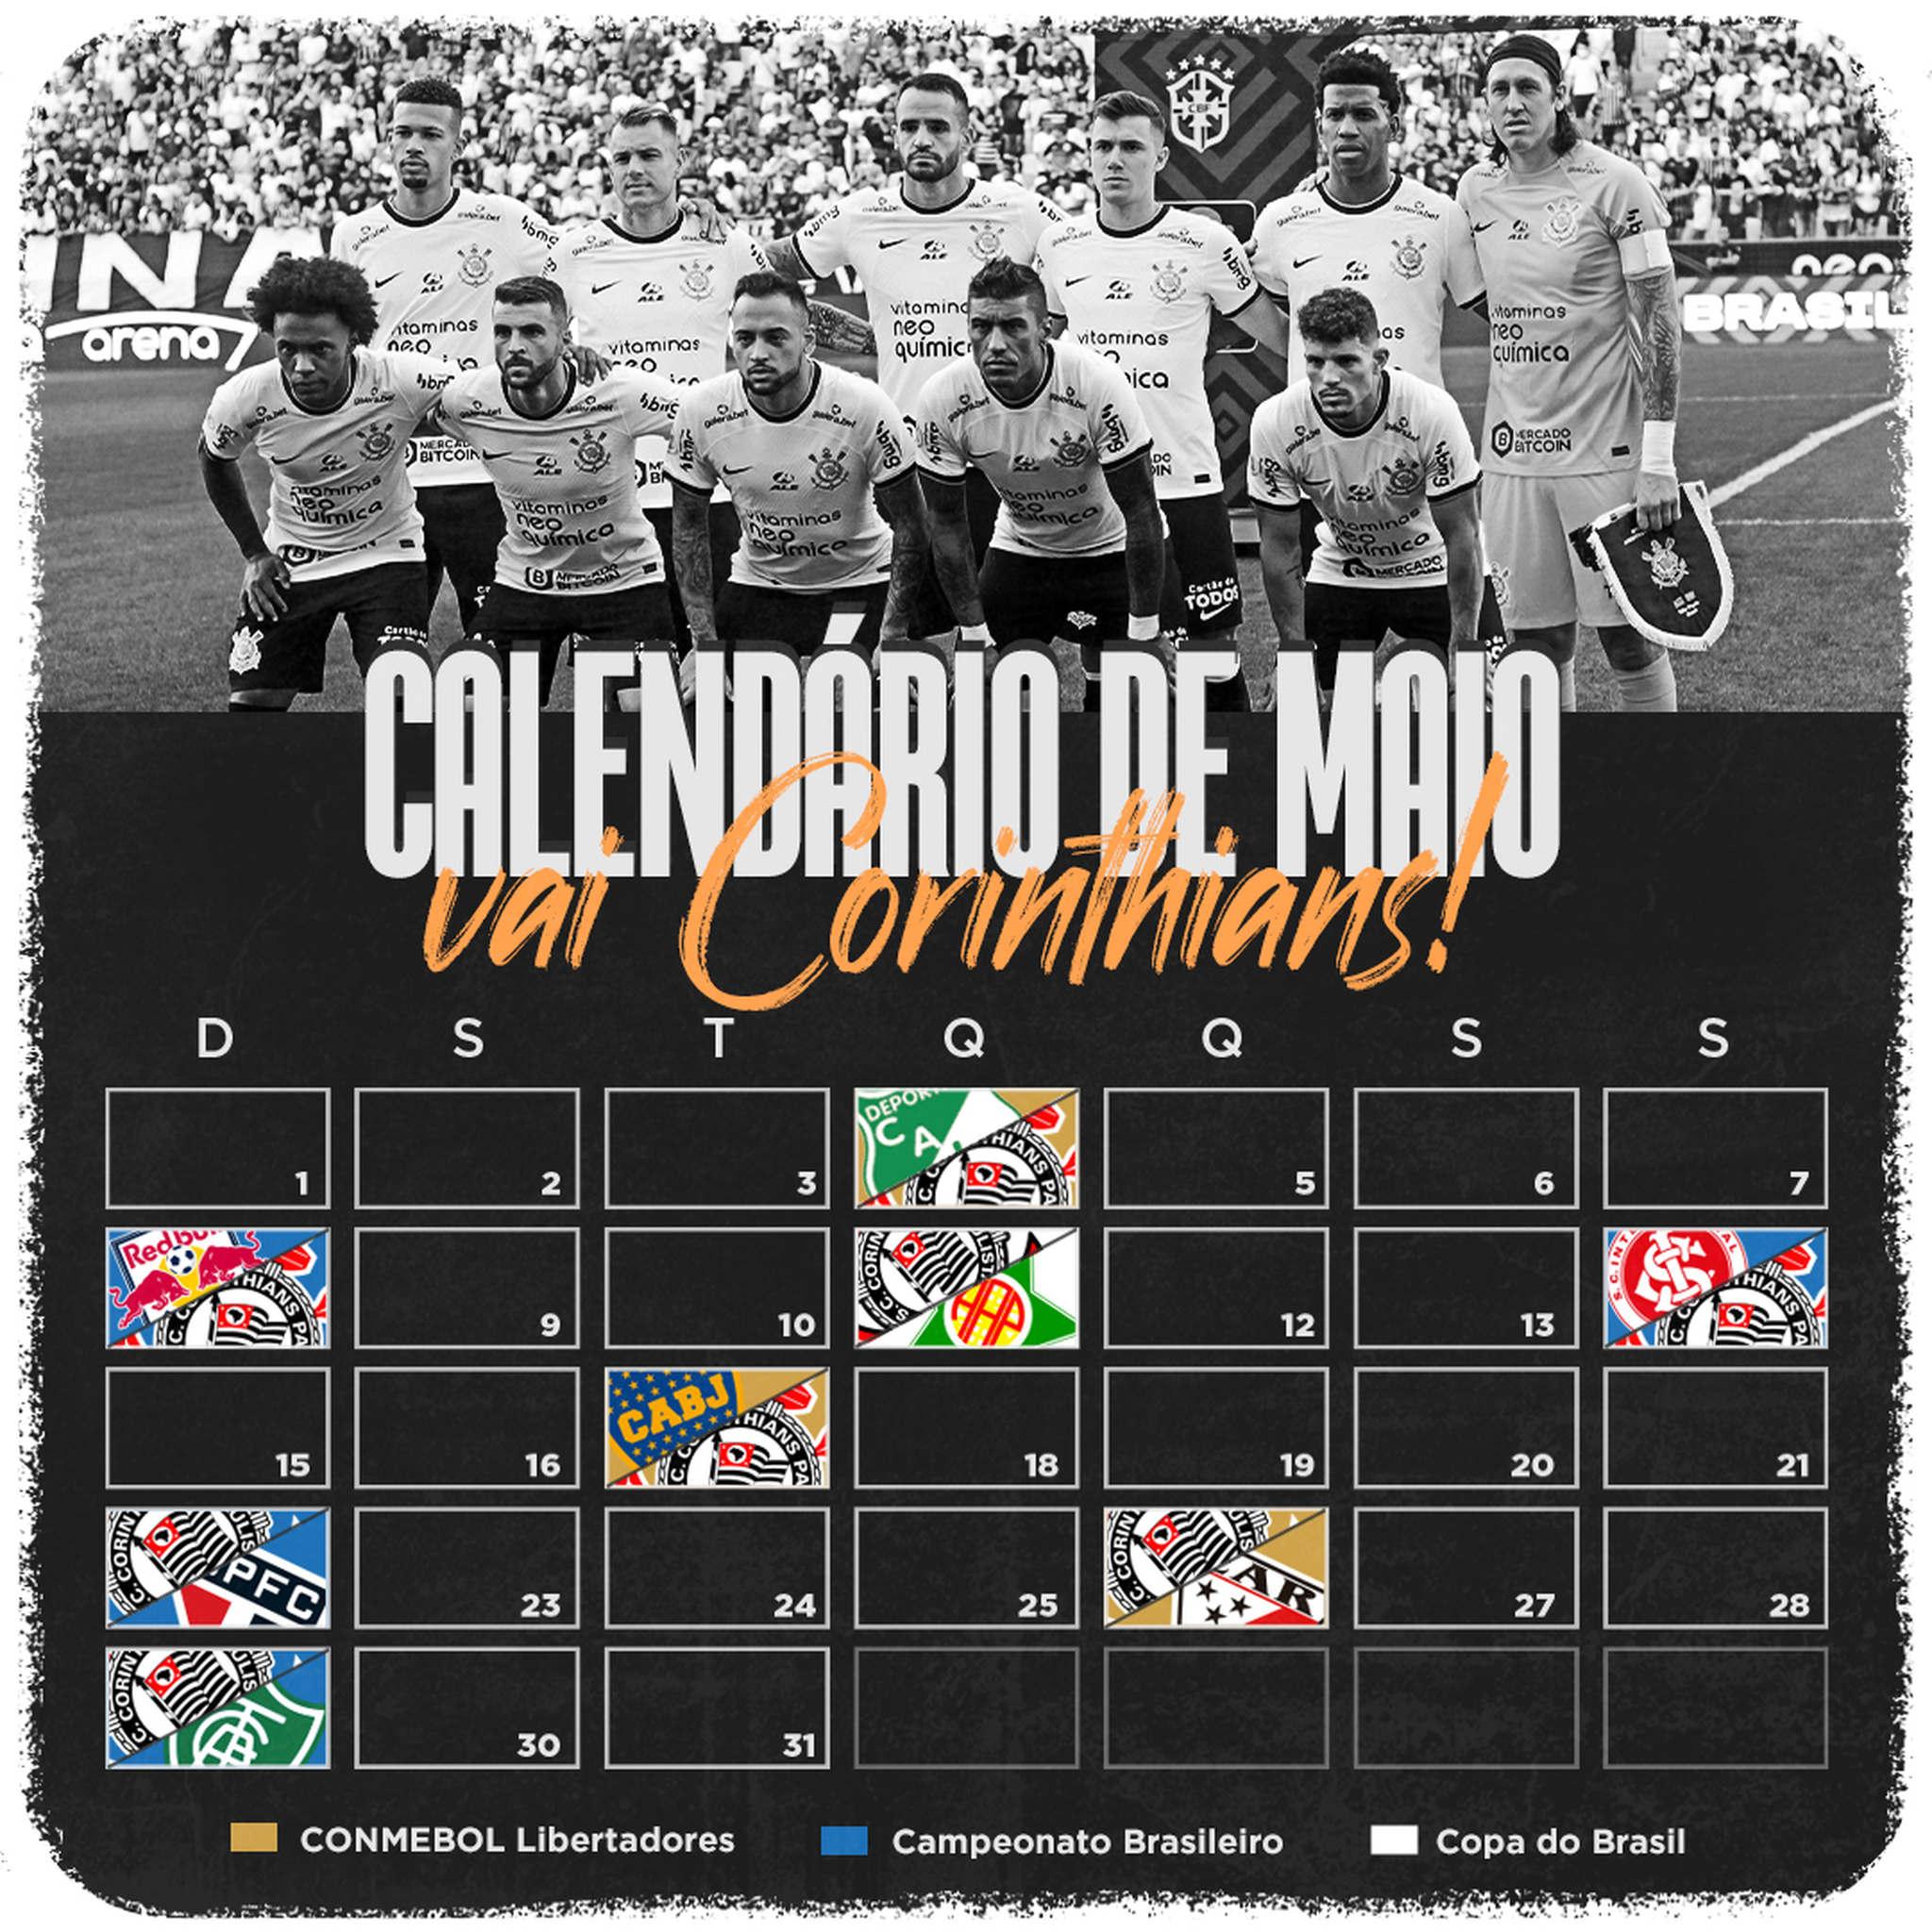 Corinthians on X: Nosso calendários de jogos para o mês de fevereiro! 🗓️  #VaiCorinthians  / X